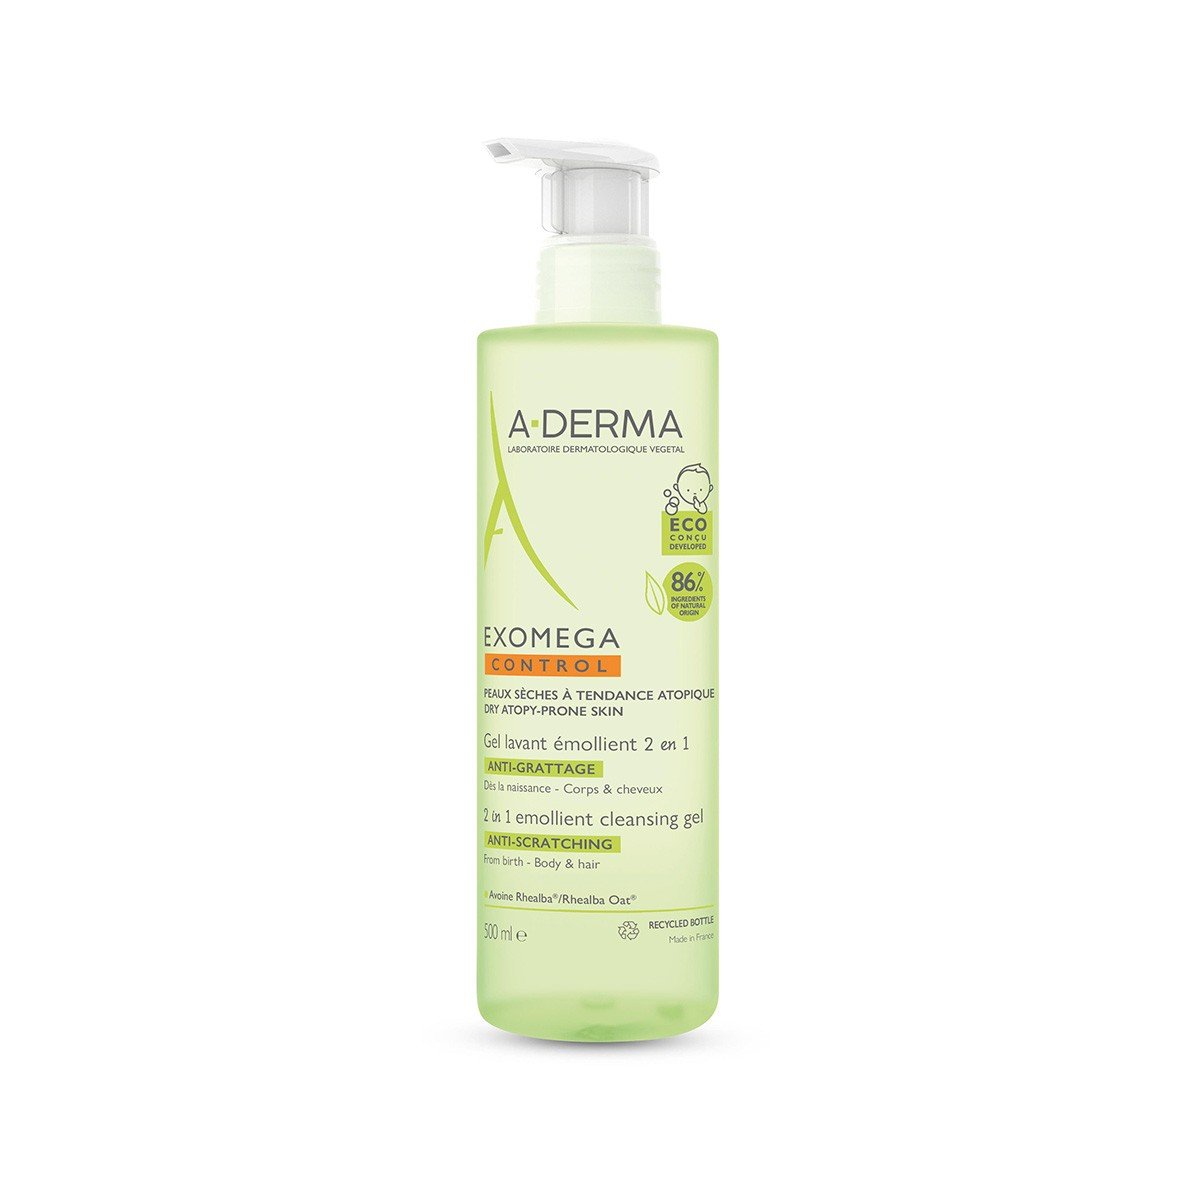 A-Derma Exomega gel limpiador emoliente 2 en 1 cuerpo y cabello, 500ml.